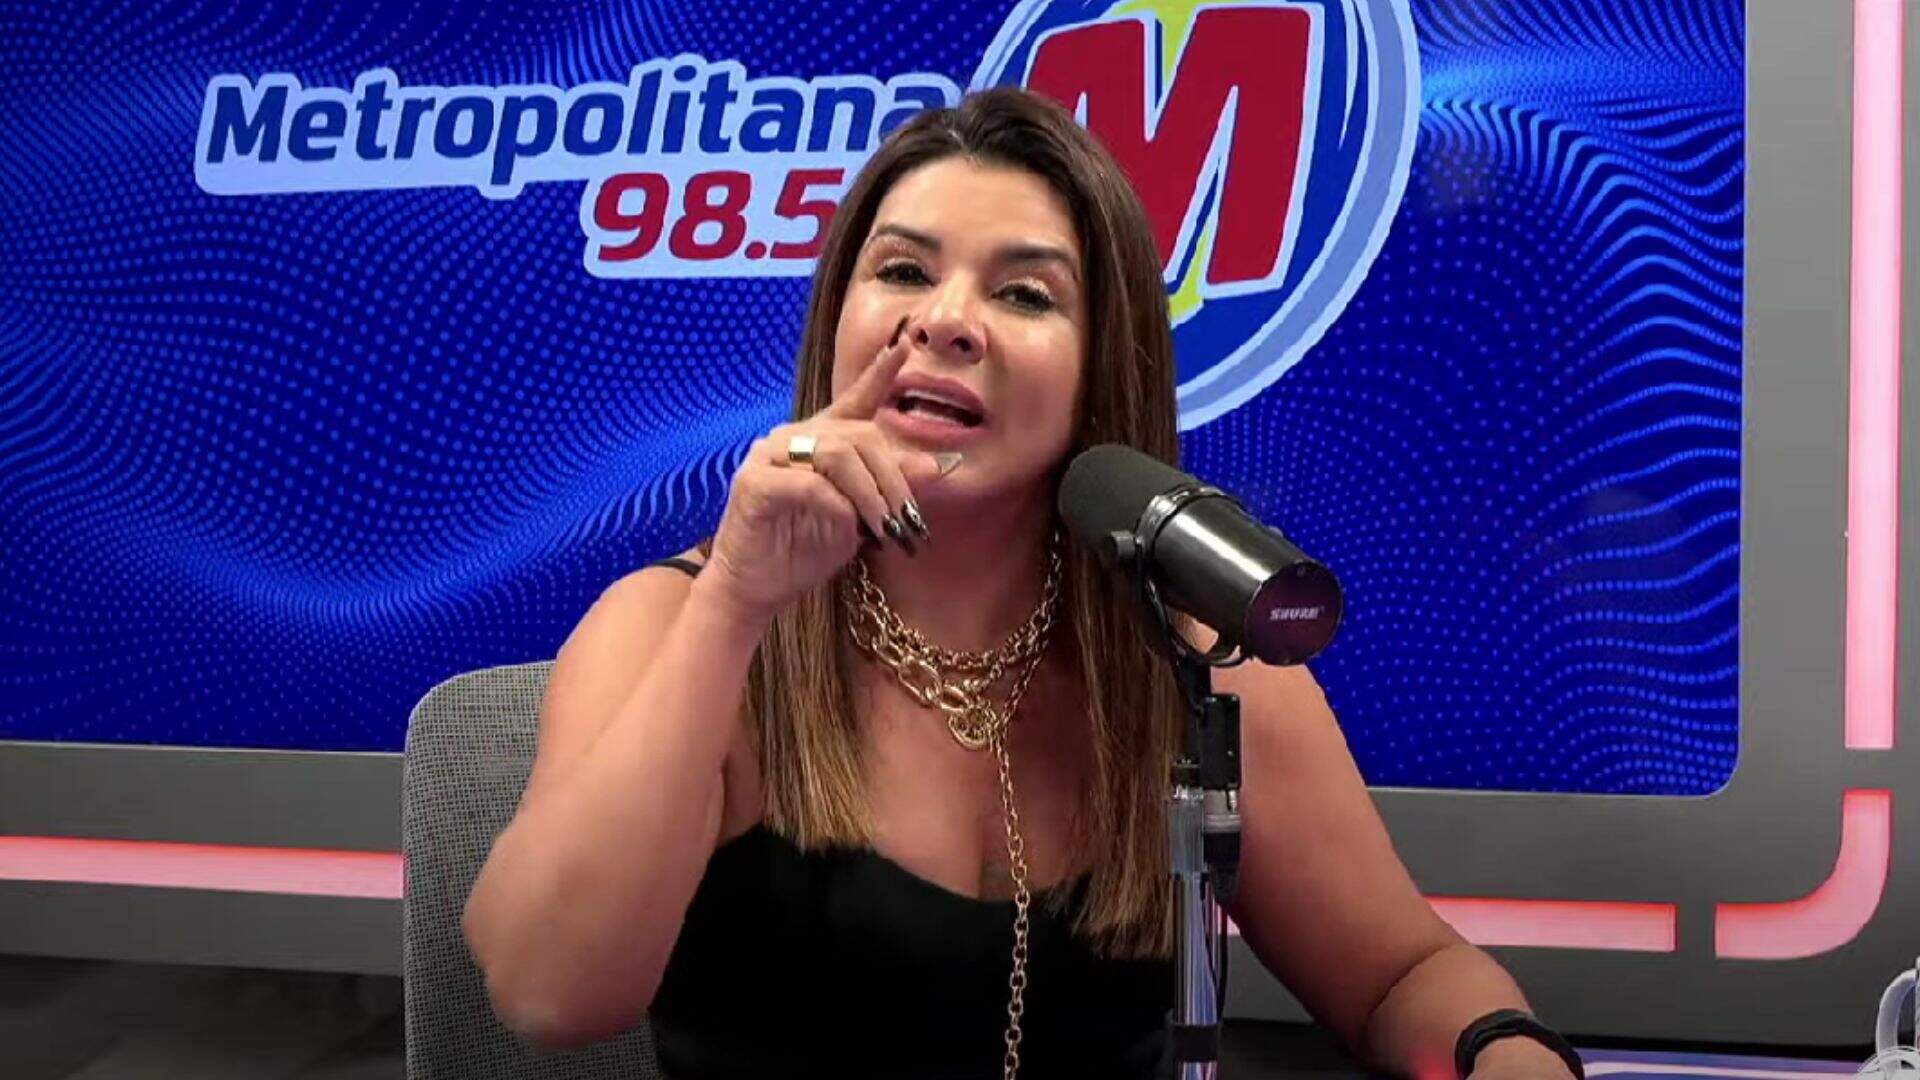 Mara Maravilha faz afirmação sobre Daniela Mercury: “Você é uma vergonha” - Metropolitana FM